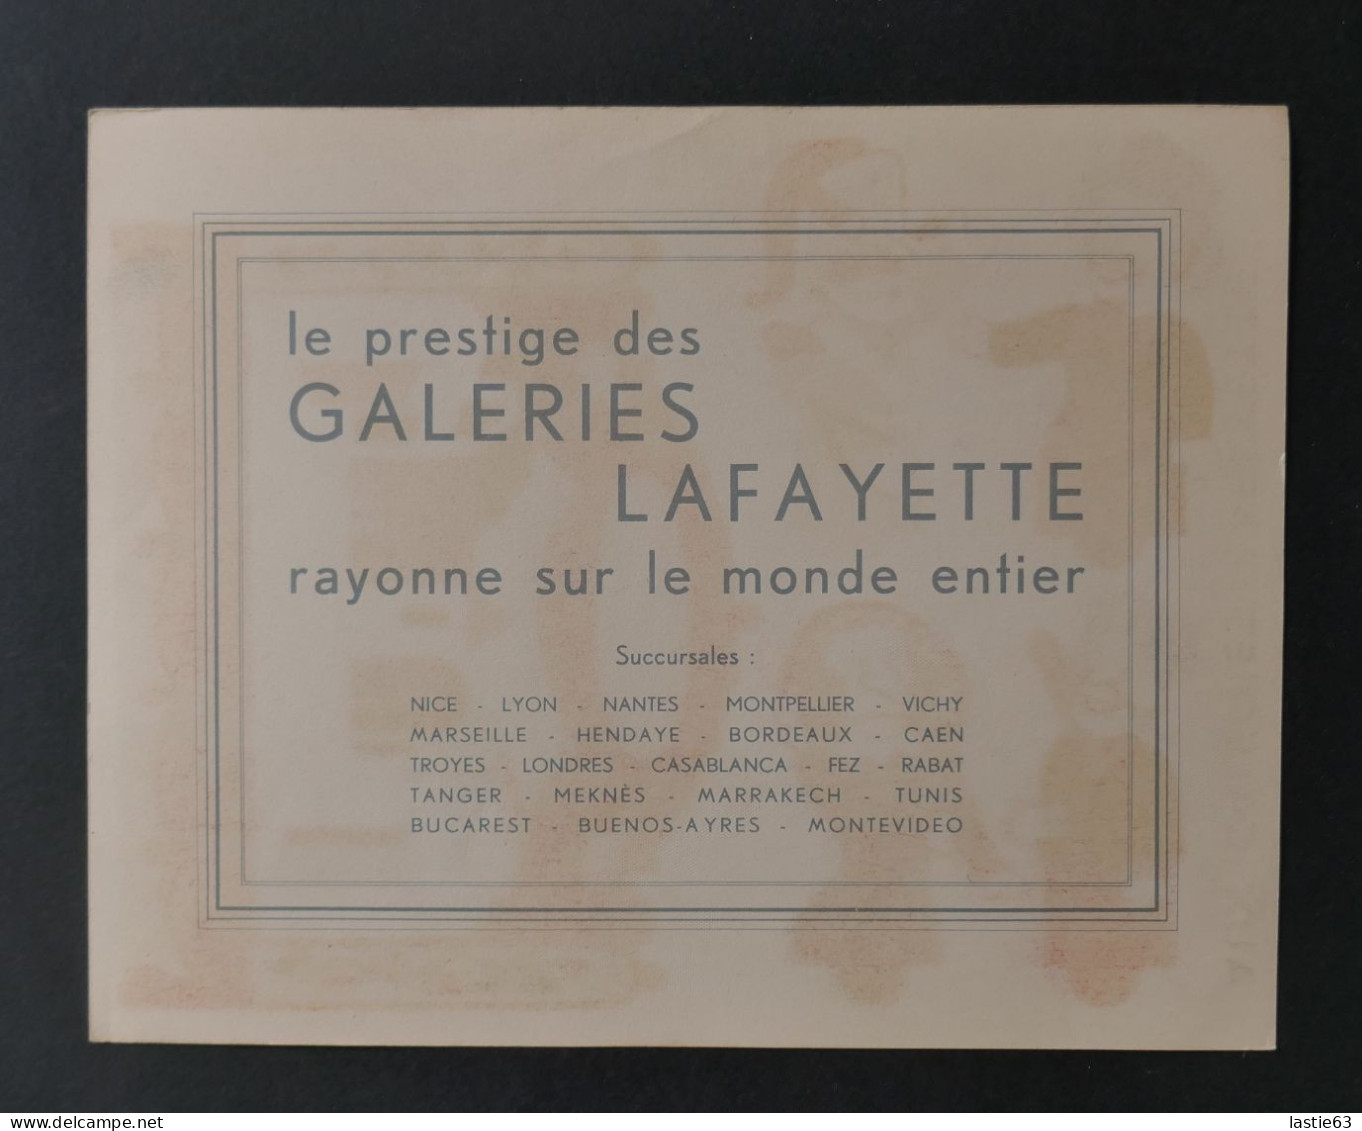 CHROMO   Cartonné Découpage Galeries Lafayette   Guignol  Théâtre Illustration Jack Roberts 1932 - Au Bon Marché